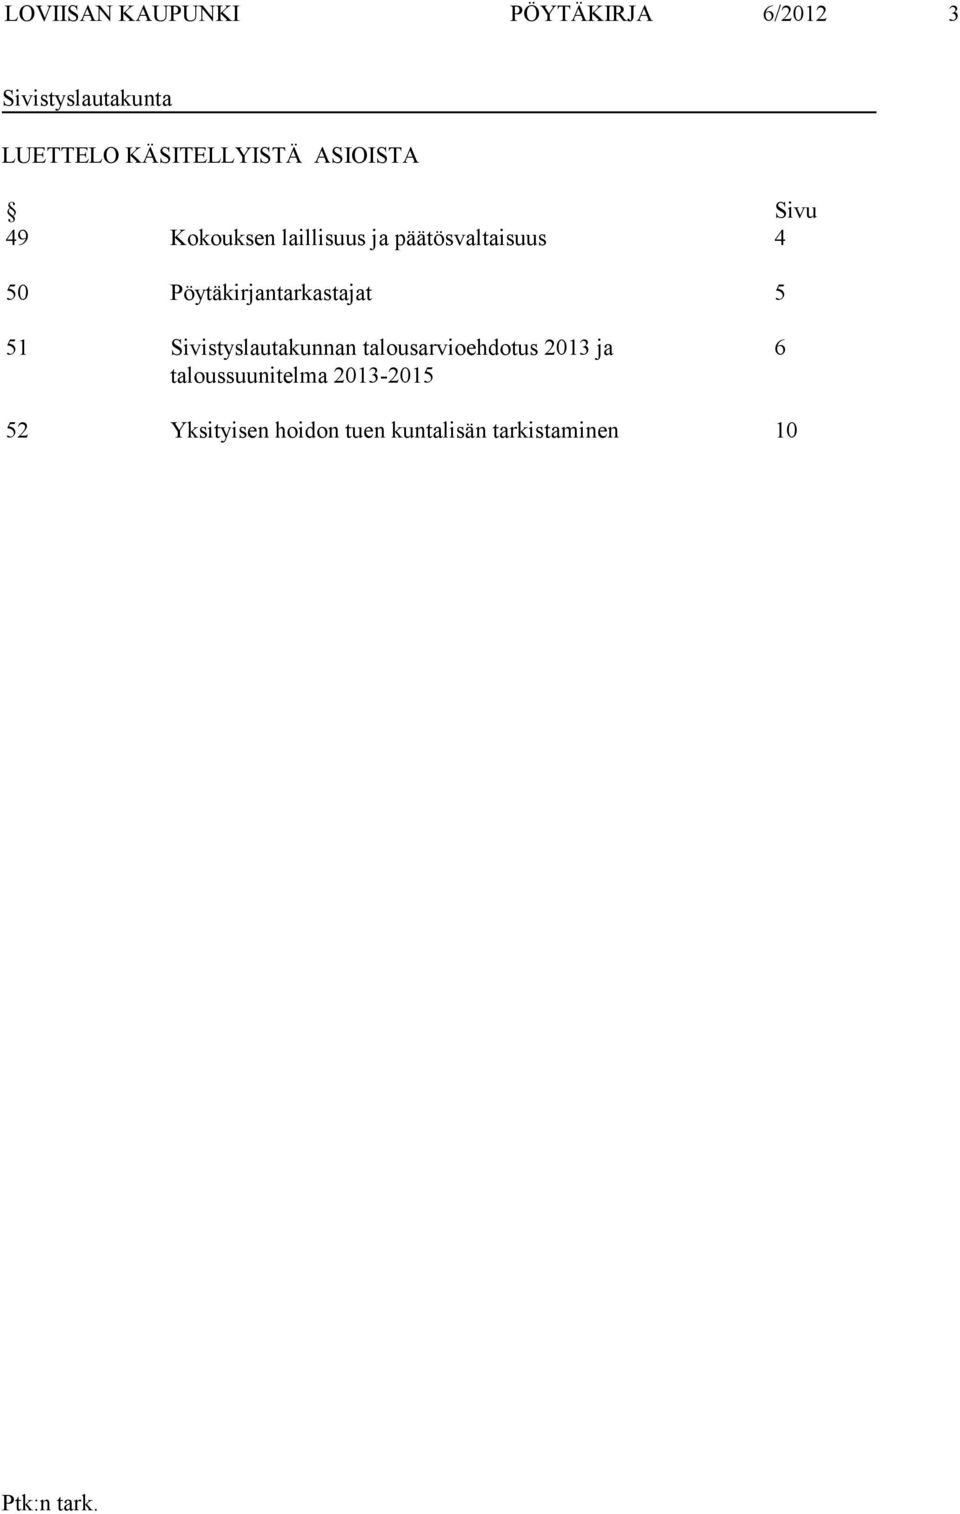 50 Pöytäkirjantarkastajat 5 51 Sivistyslautakunnan talousarvioehdotus 2013